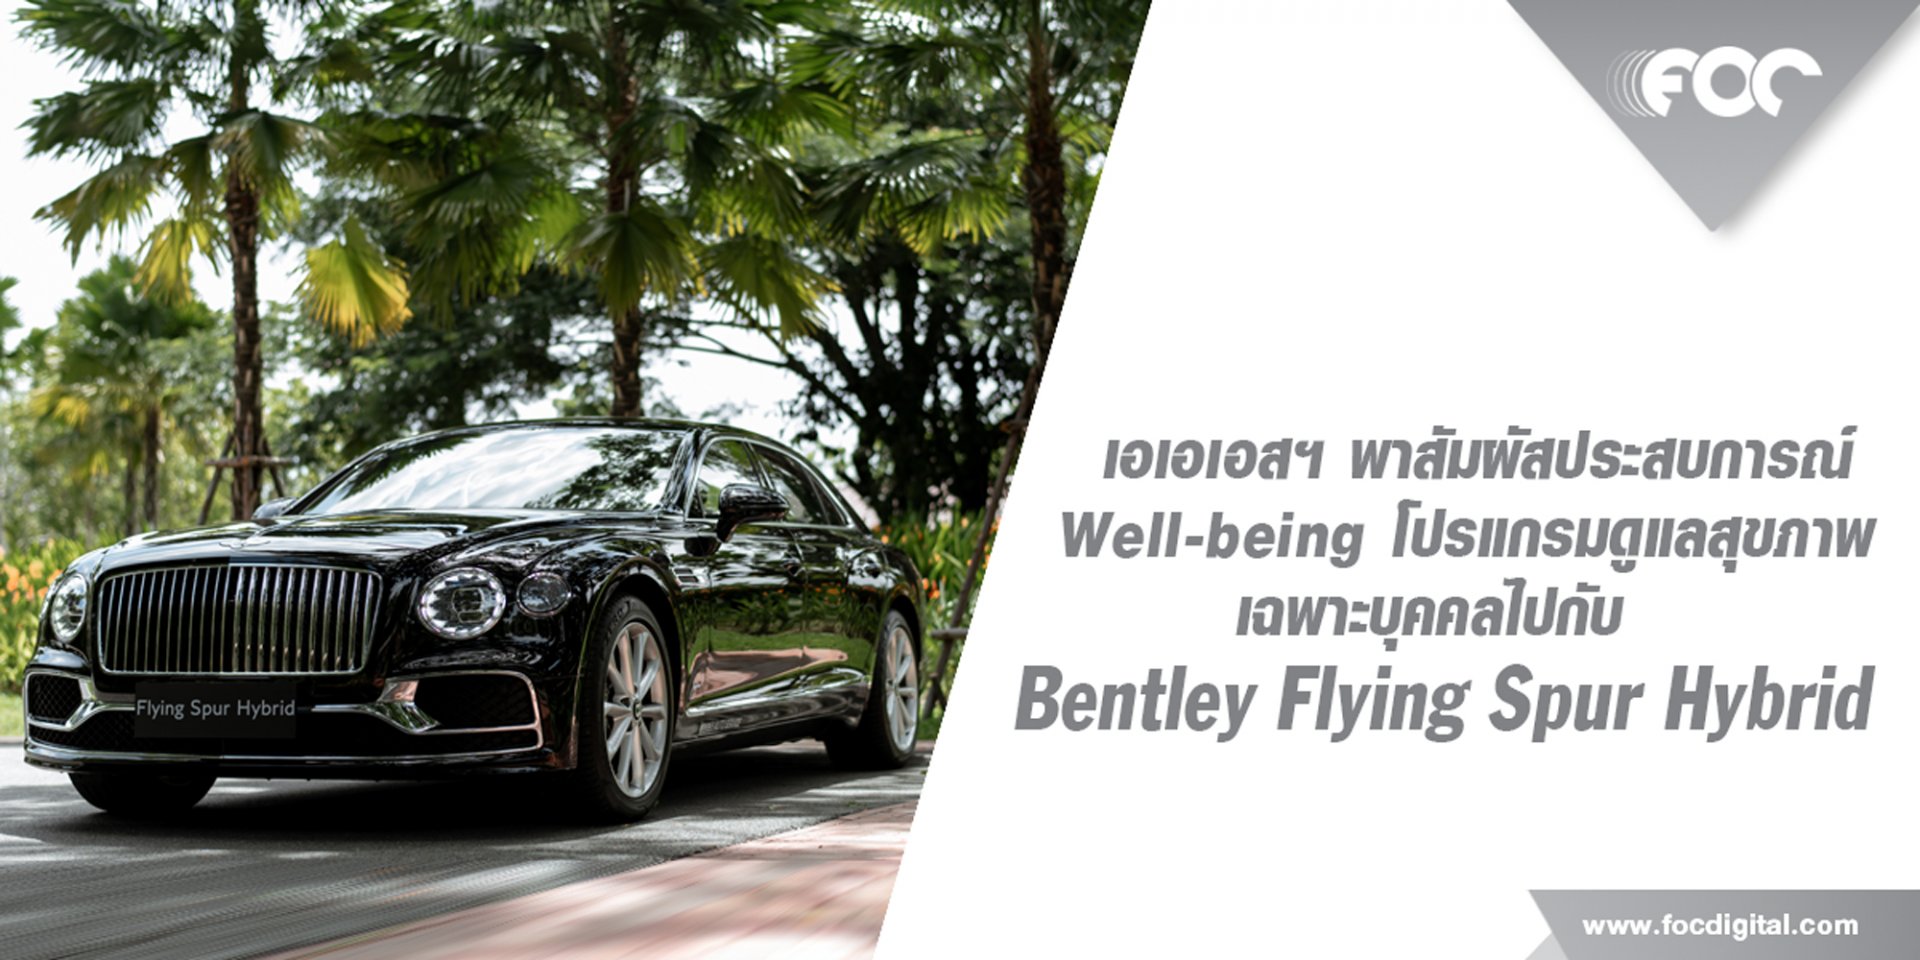 เอเอเอสฯ พาสัมผัสประสบการณ์ Well-being แบบเหนือระดับกับโปรแกรมดูแลสุขภาพเฉพาะบุคคลไปกับ Bentley Flying Spur Hybrid